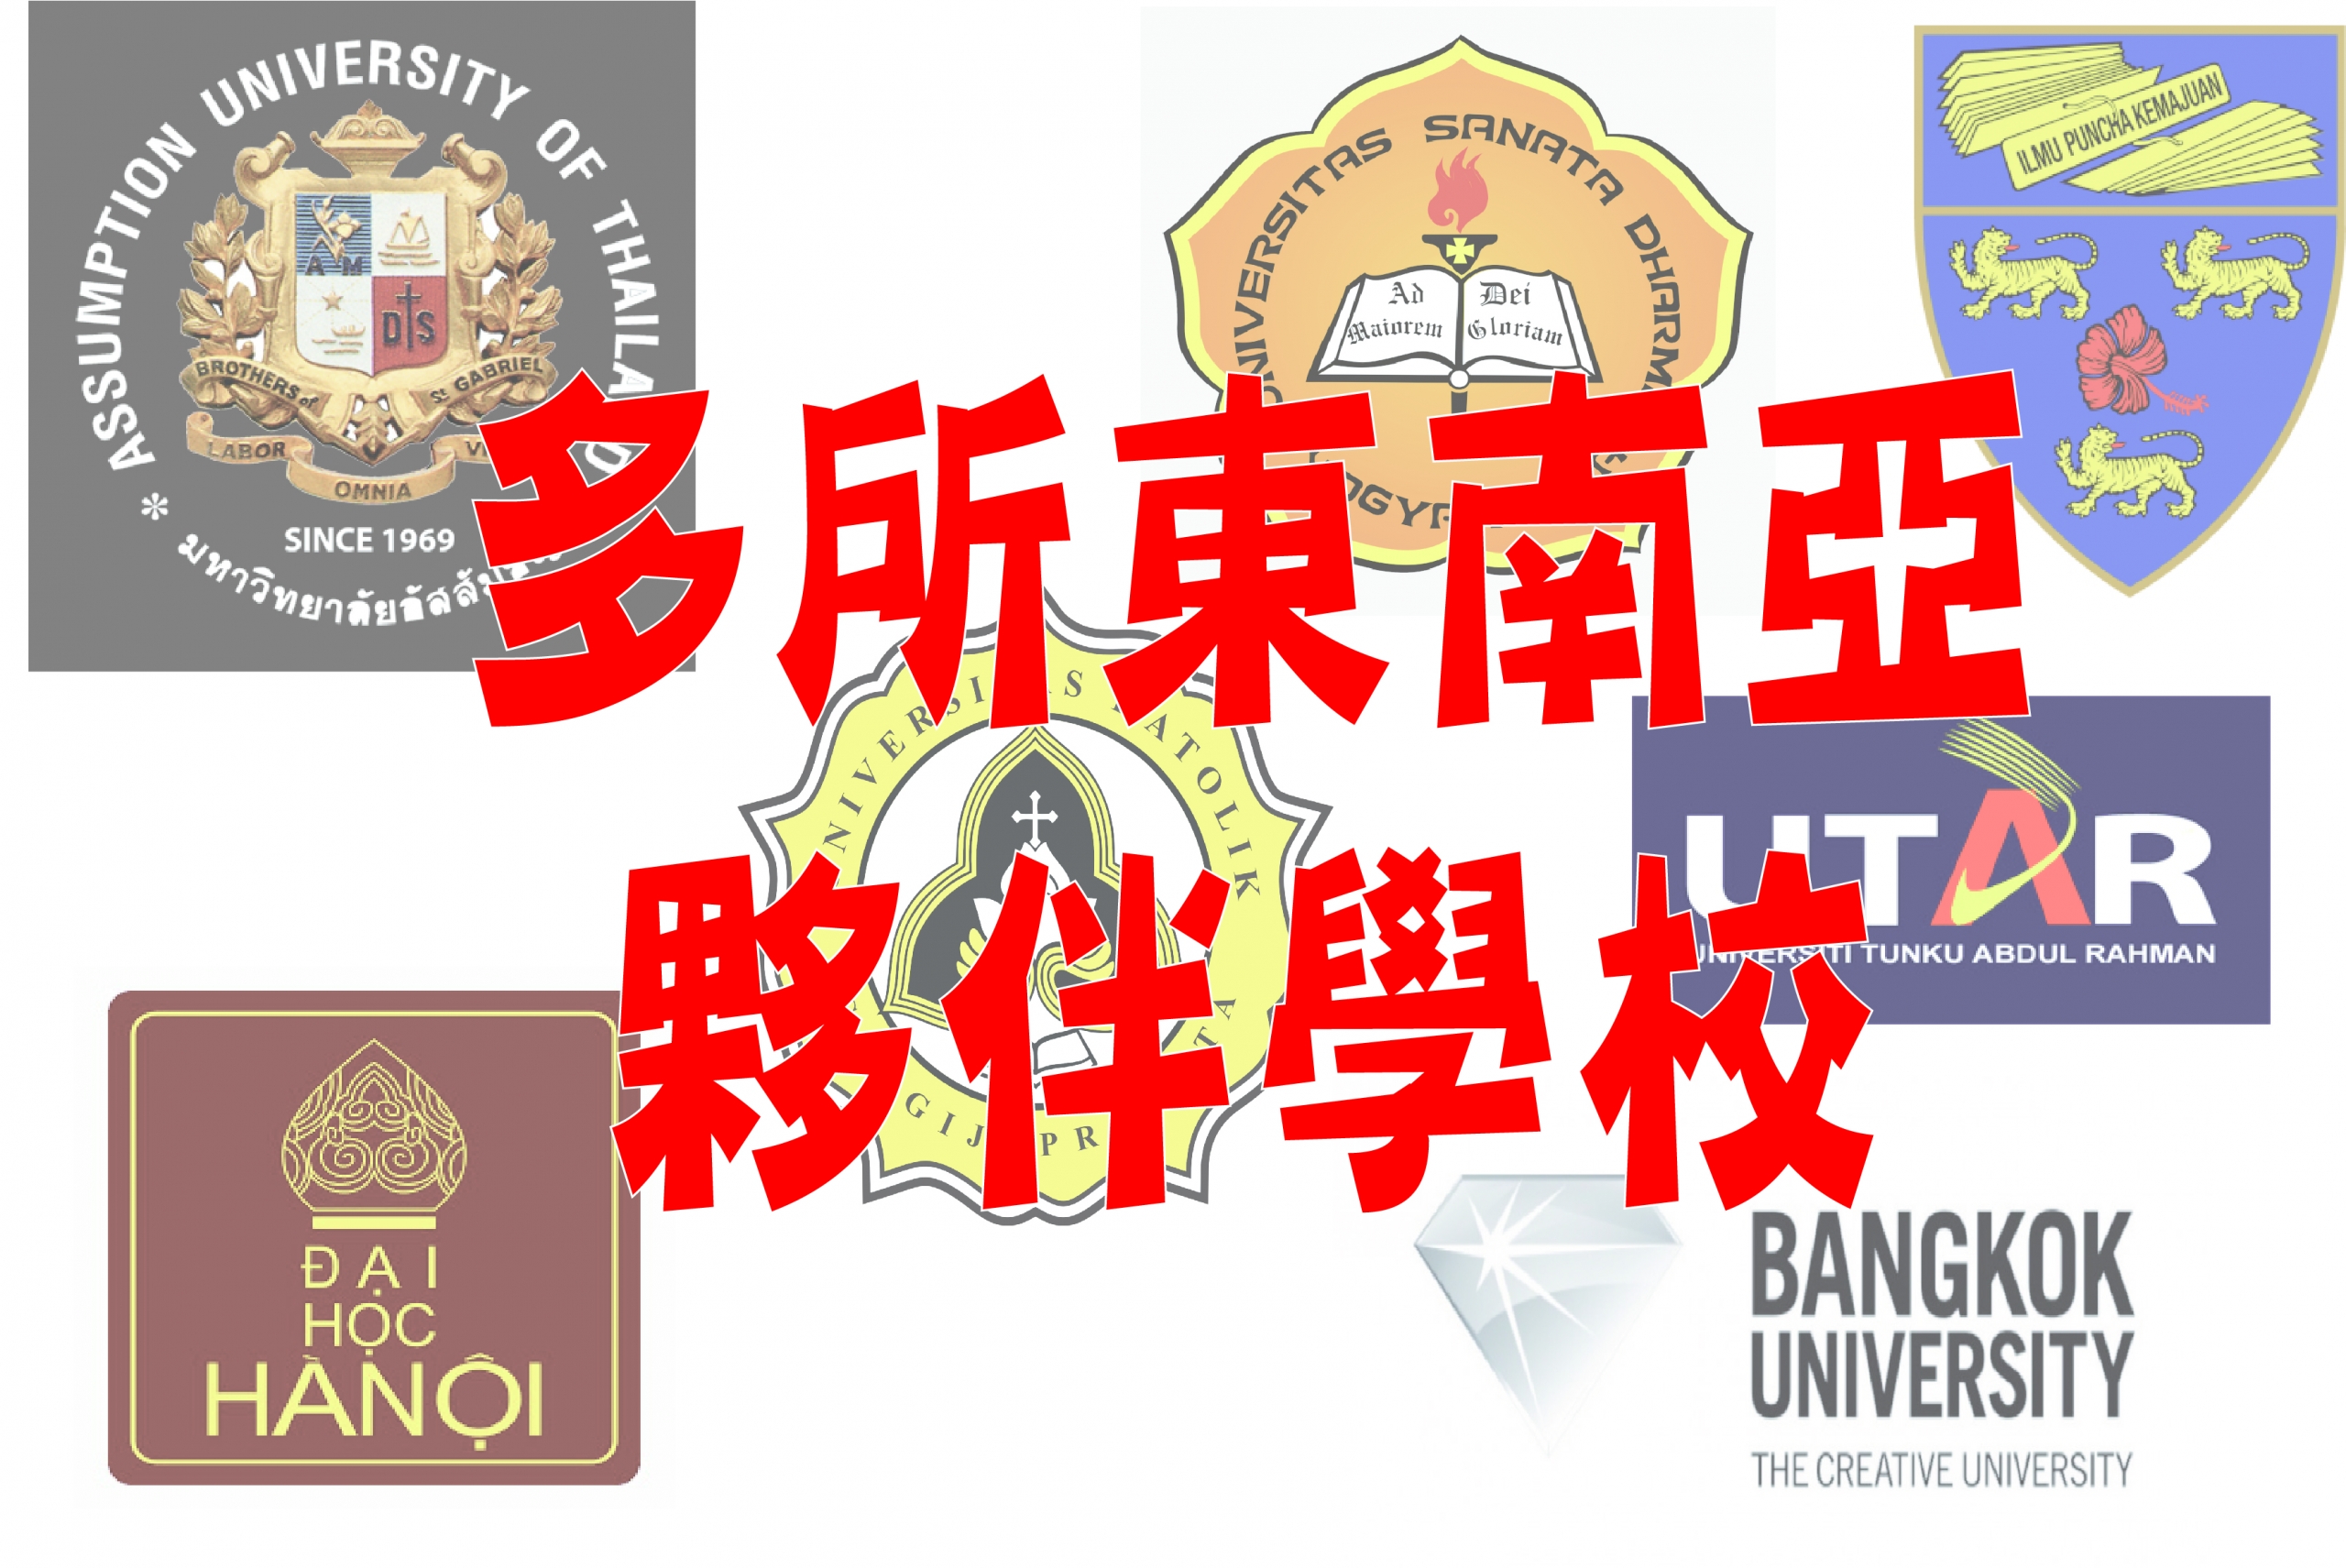 本校多年來在世界各地建立了超過200間姊妹校，國際資源一向豐富及多元，東南亞夥伴也有超過50間大學，和泰國亞洲理工學院、泰國法政大學、菲律賓國立大學、馬尼拉雅典耀大學、越南河內國家大學所屬外國語大學等知名大學密切合作。